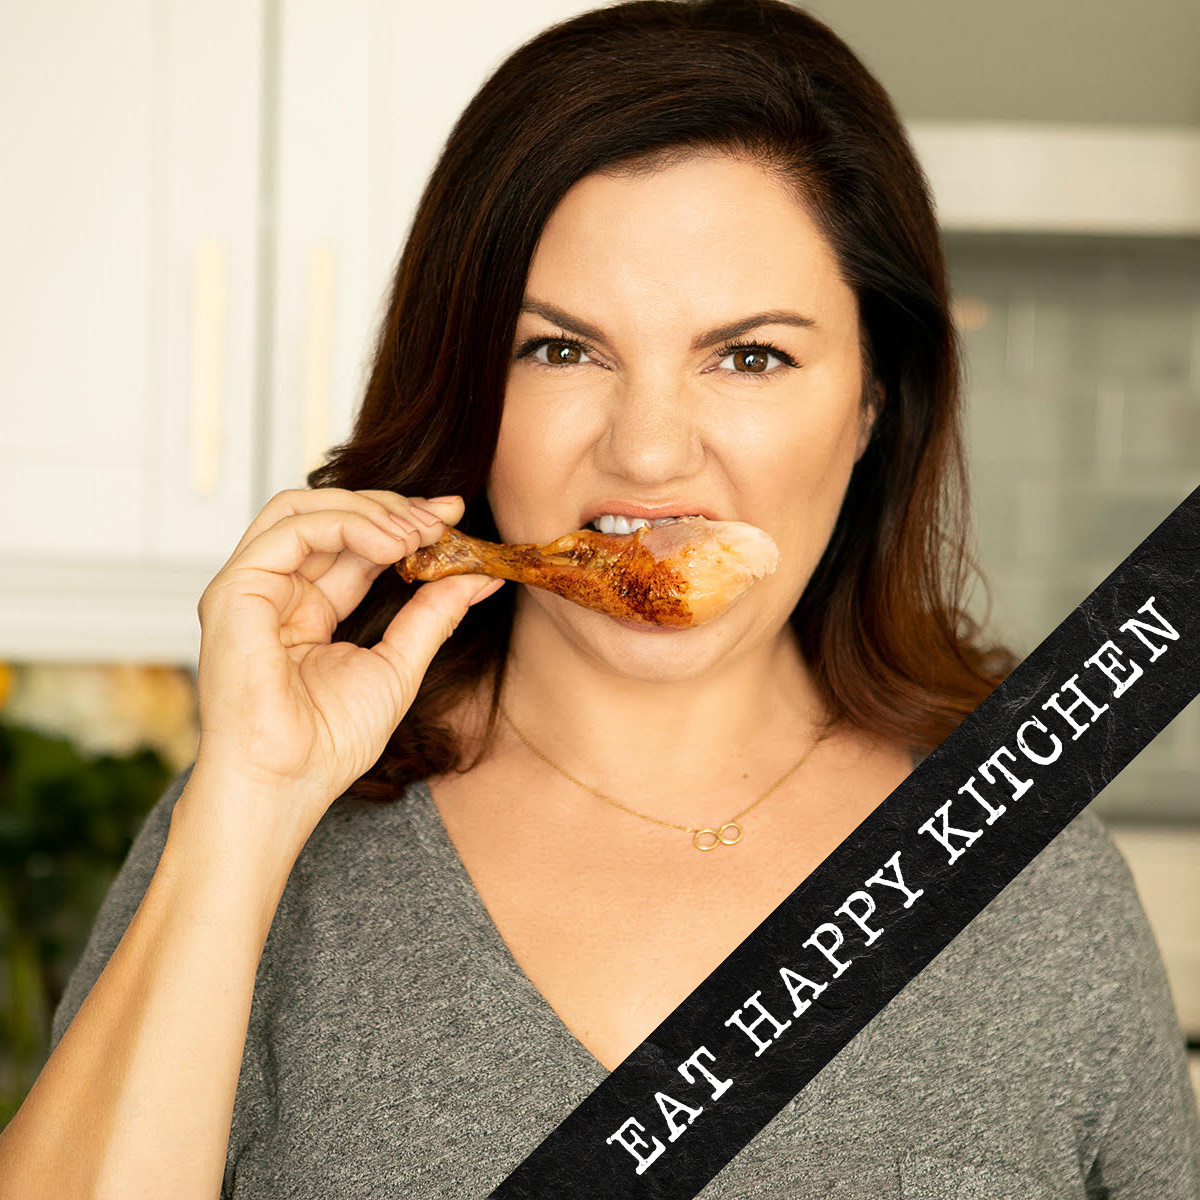 Anna Vocino's Eat Happy Kitchen Newsletter